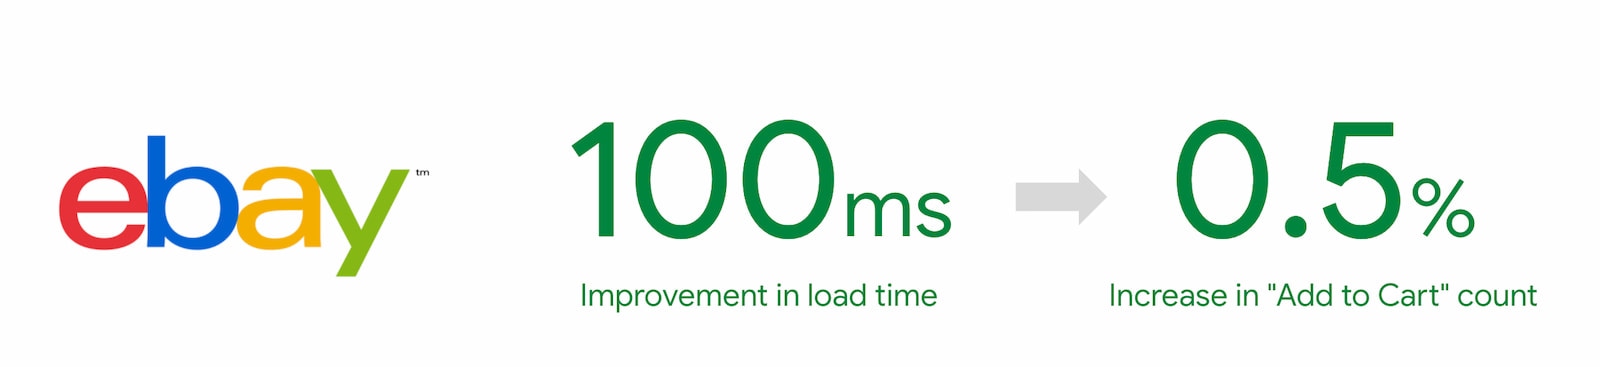 Una mejora de 100 ms en el tiempo de carga generó un aumento del 0,5% en el recuento de elementos agregados al carrito de eBay.